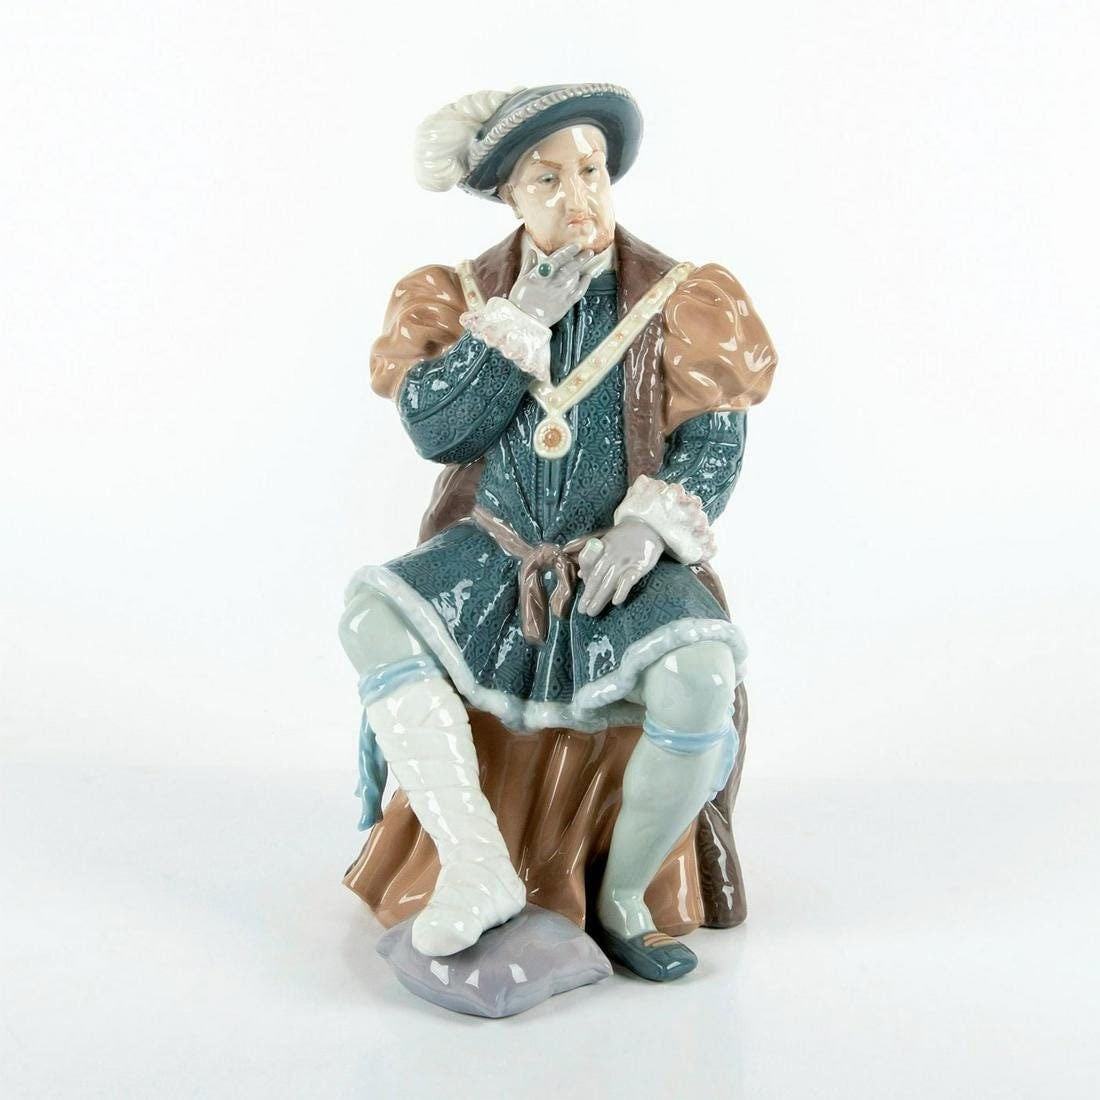 Solide étain Roi Henry VIII figurine avec accents dorés collection 7747 